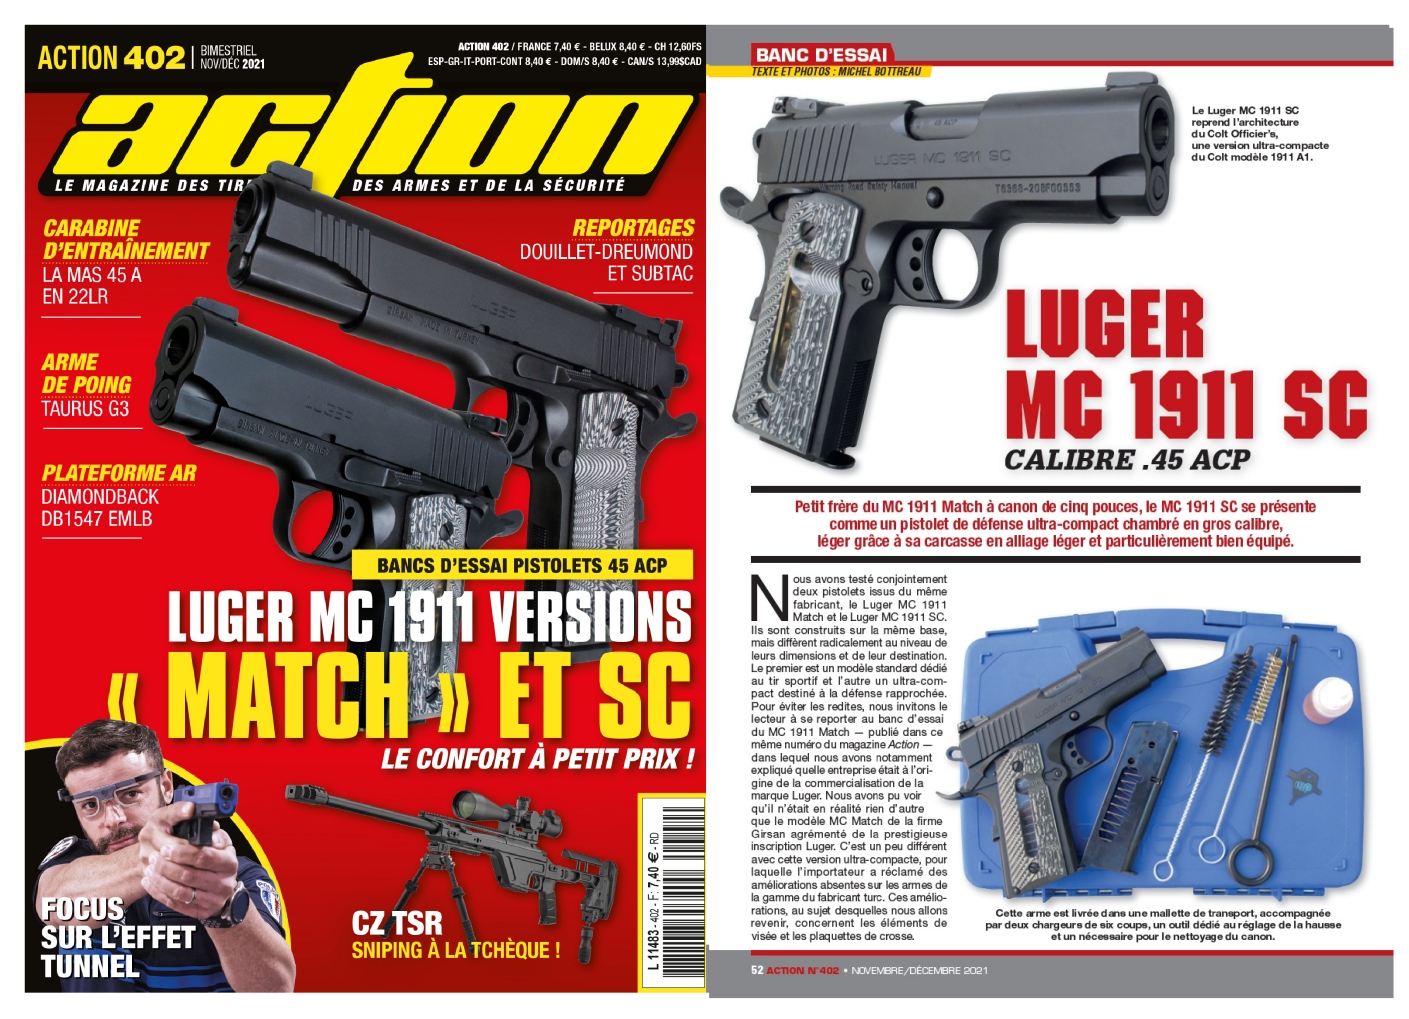 Le banc d’essai du pistolet Luger MC 1911 SC a été publié sur 6 pages dans le magazine Action n°402 (novembre/décembre 2021).